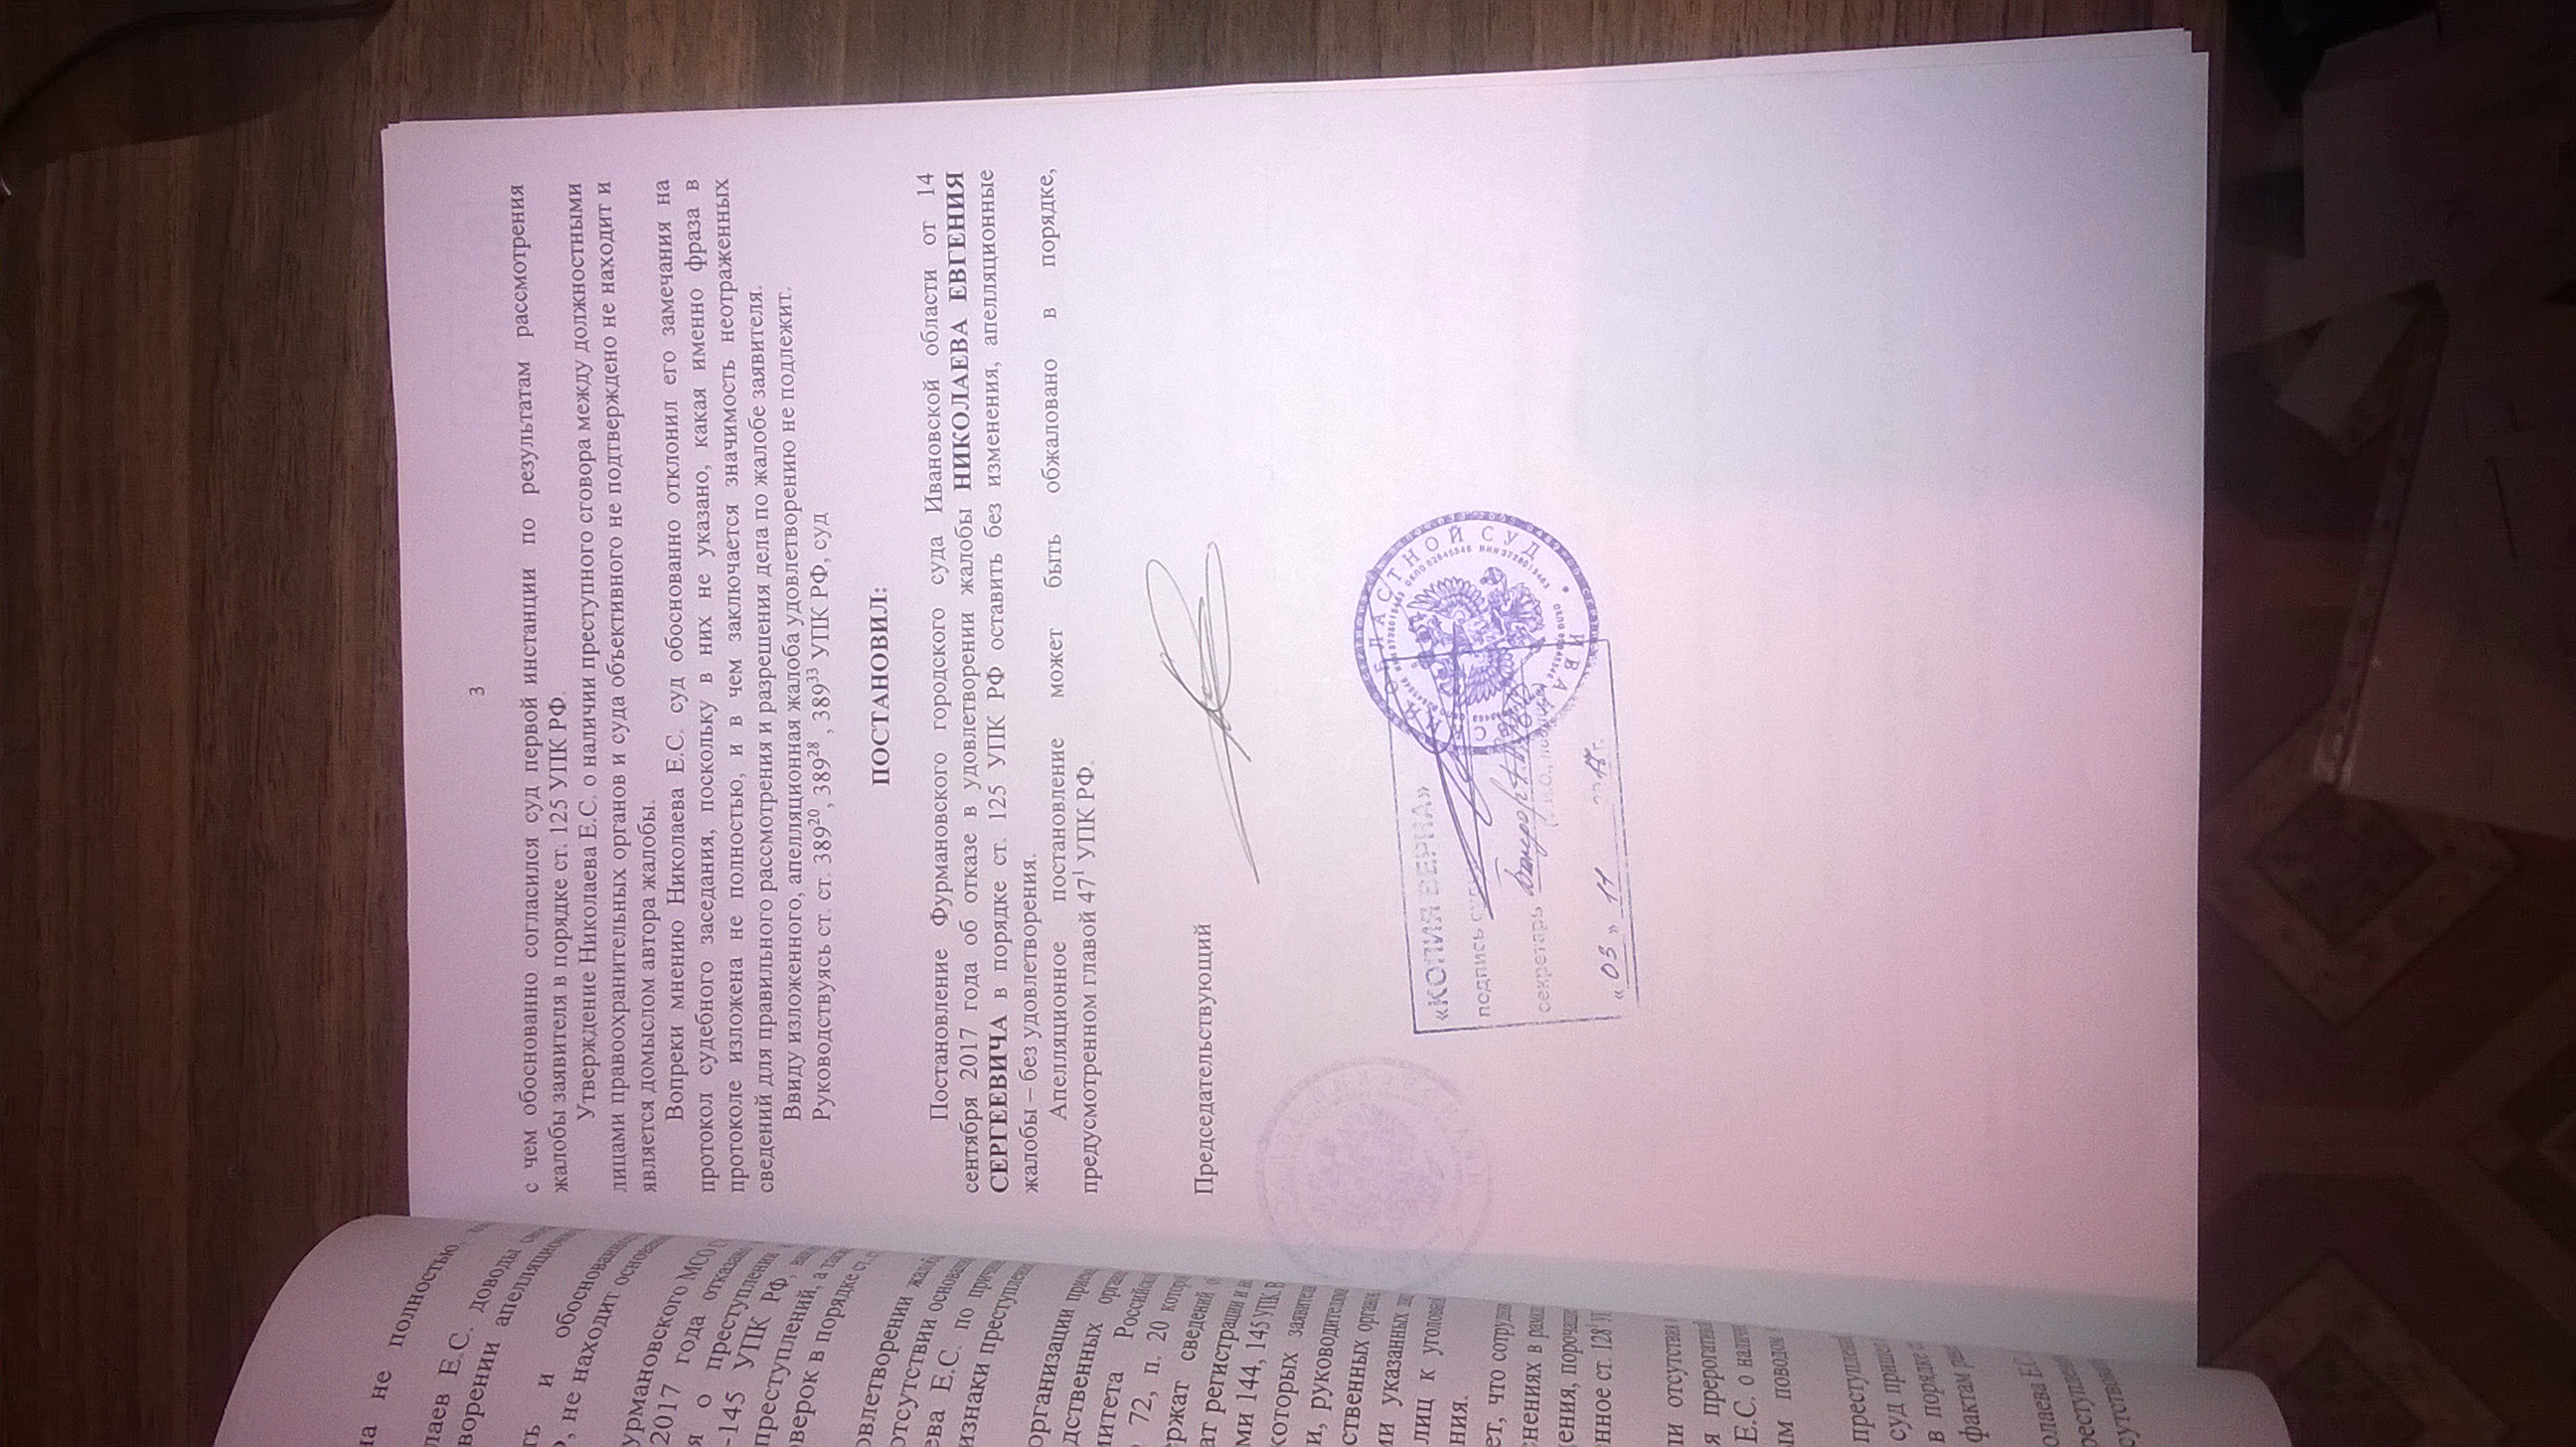 Аппеляционное постановление Ивановский областной суд(ID документа 179) (Дата документа 30.10.2017) Страница 3